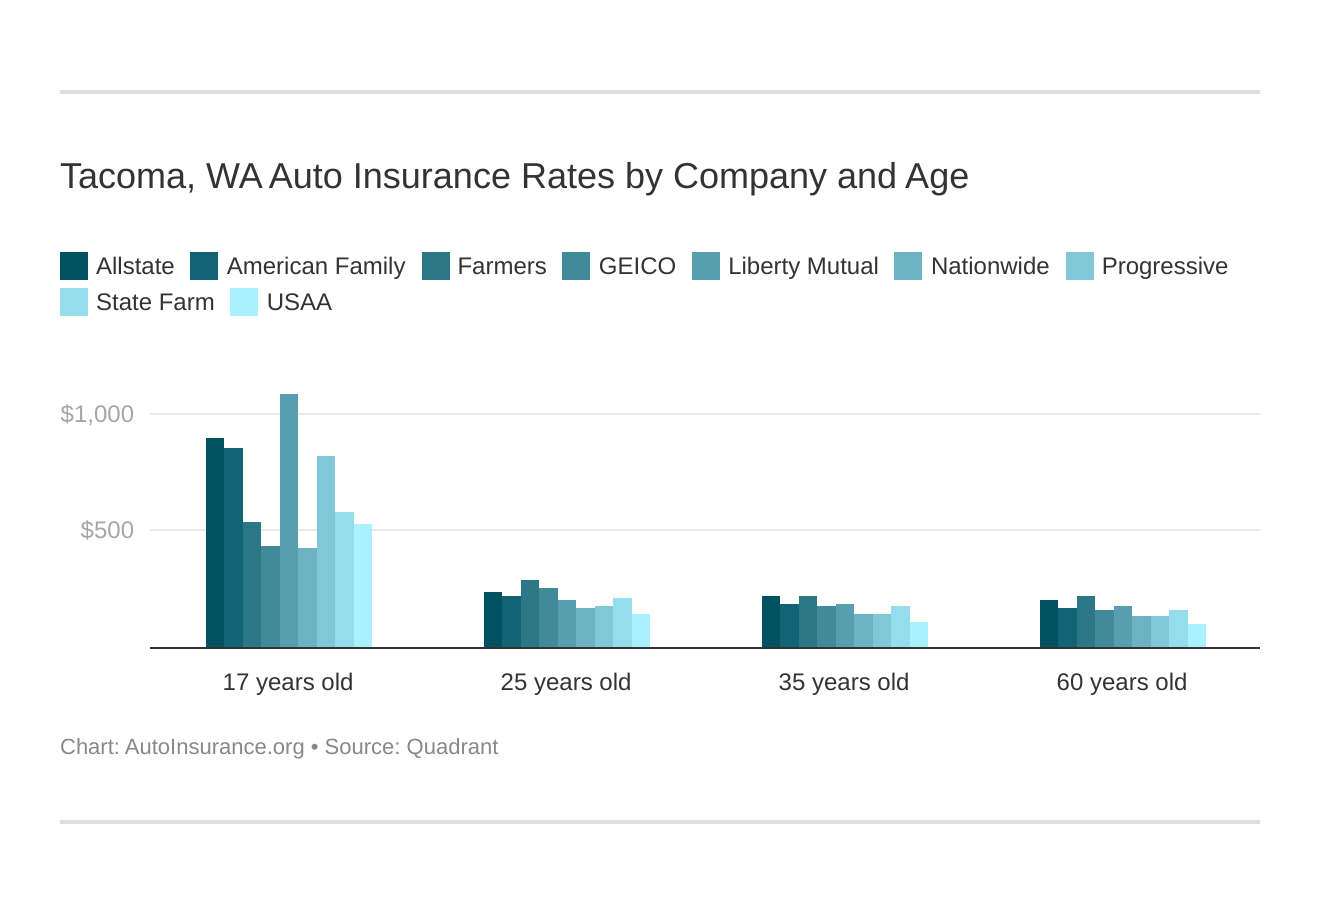 Tacoma, WA Auto Insurance Rates by Company and Age